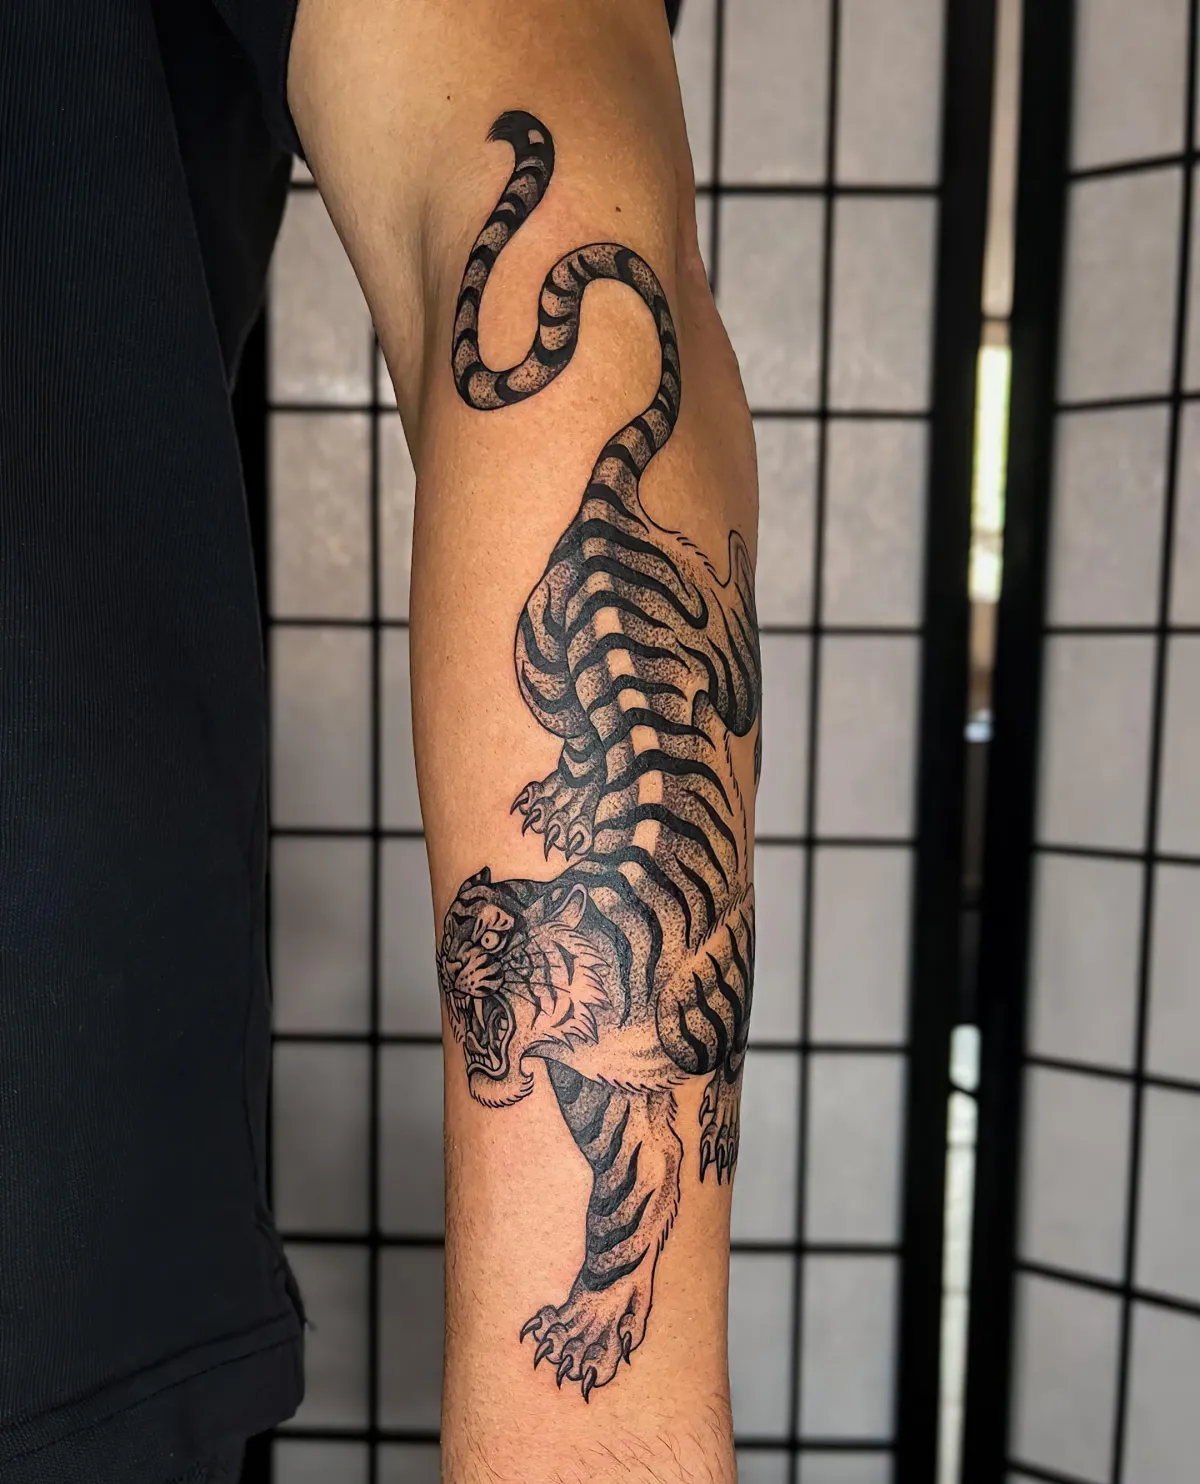 großes tattoo am unterarm tiger designs für männer